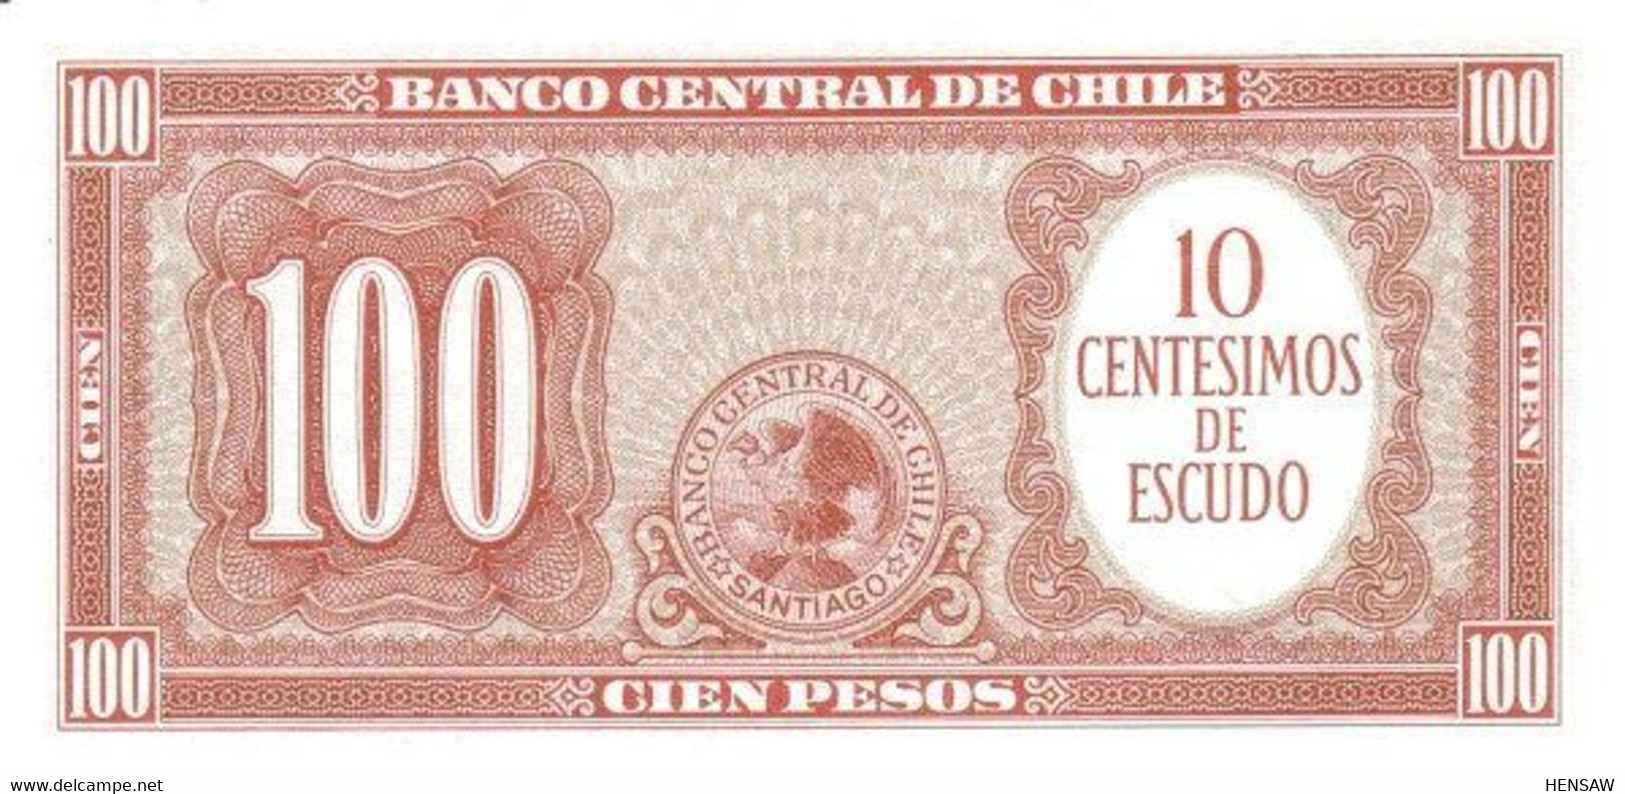 CHILE 100 PESOS P 127 1960 UNC SC NUEVO - Chili